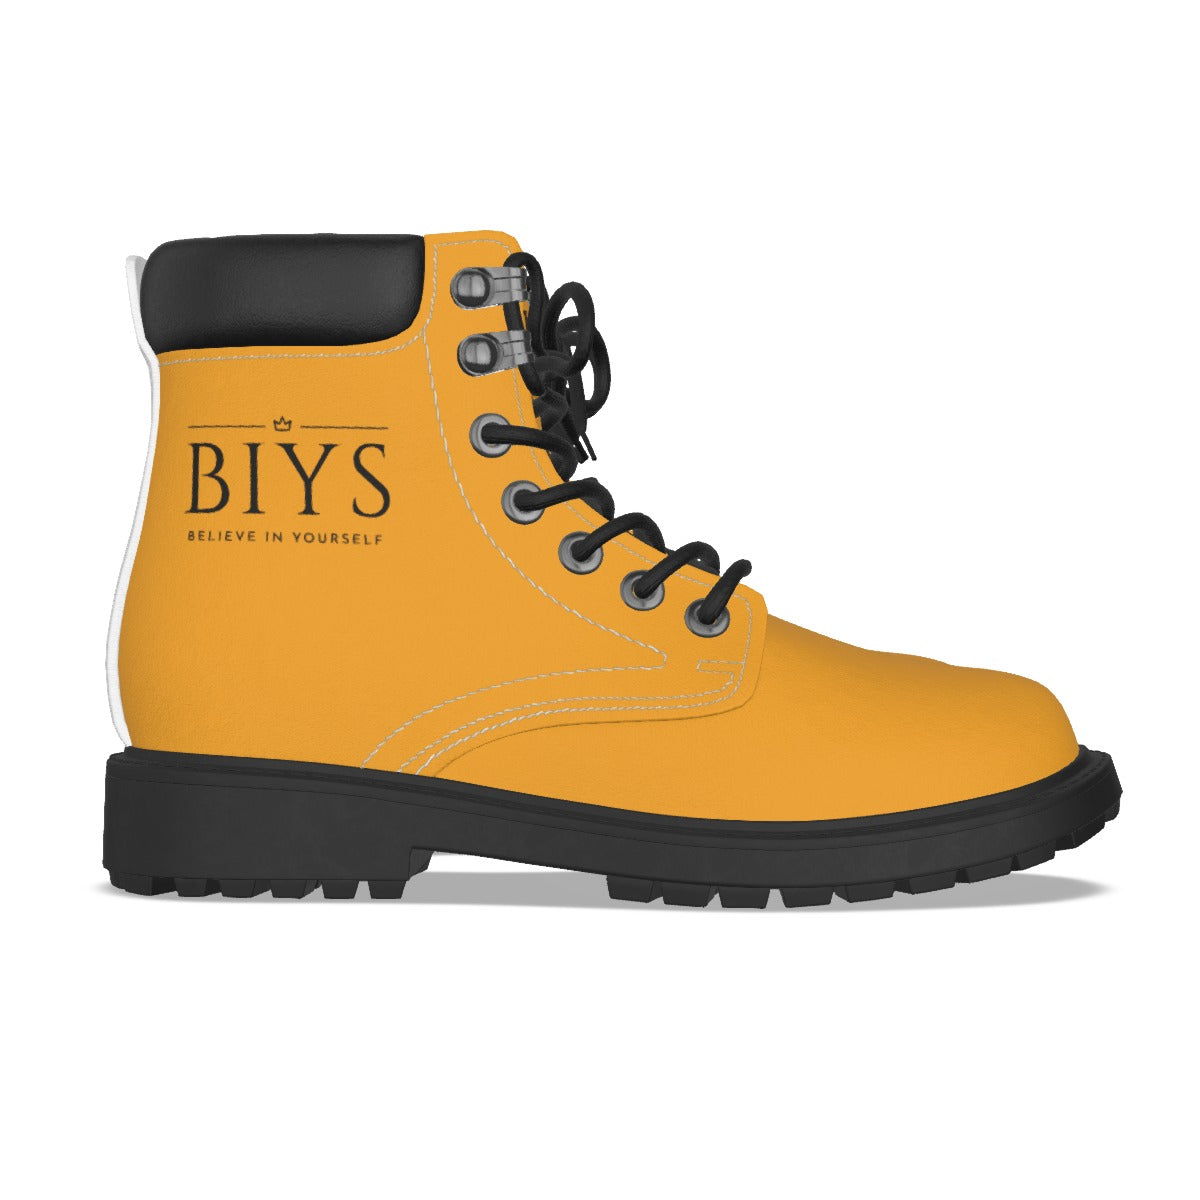 BIYS Women's Gold Boots